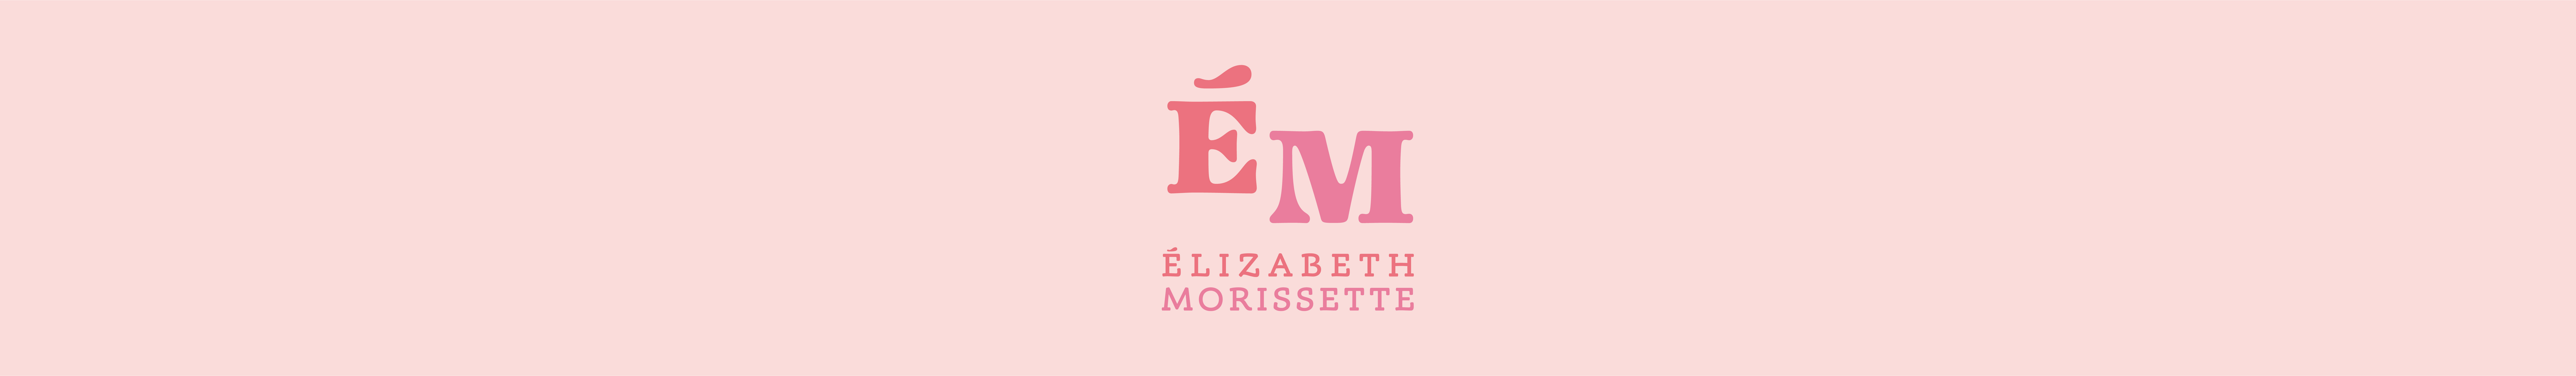 Élizabeth Morissette's profile banner